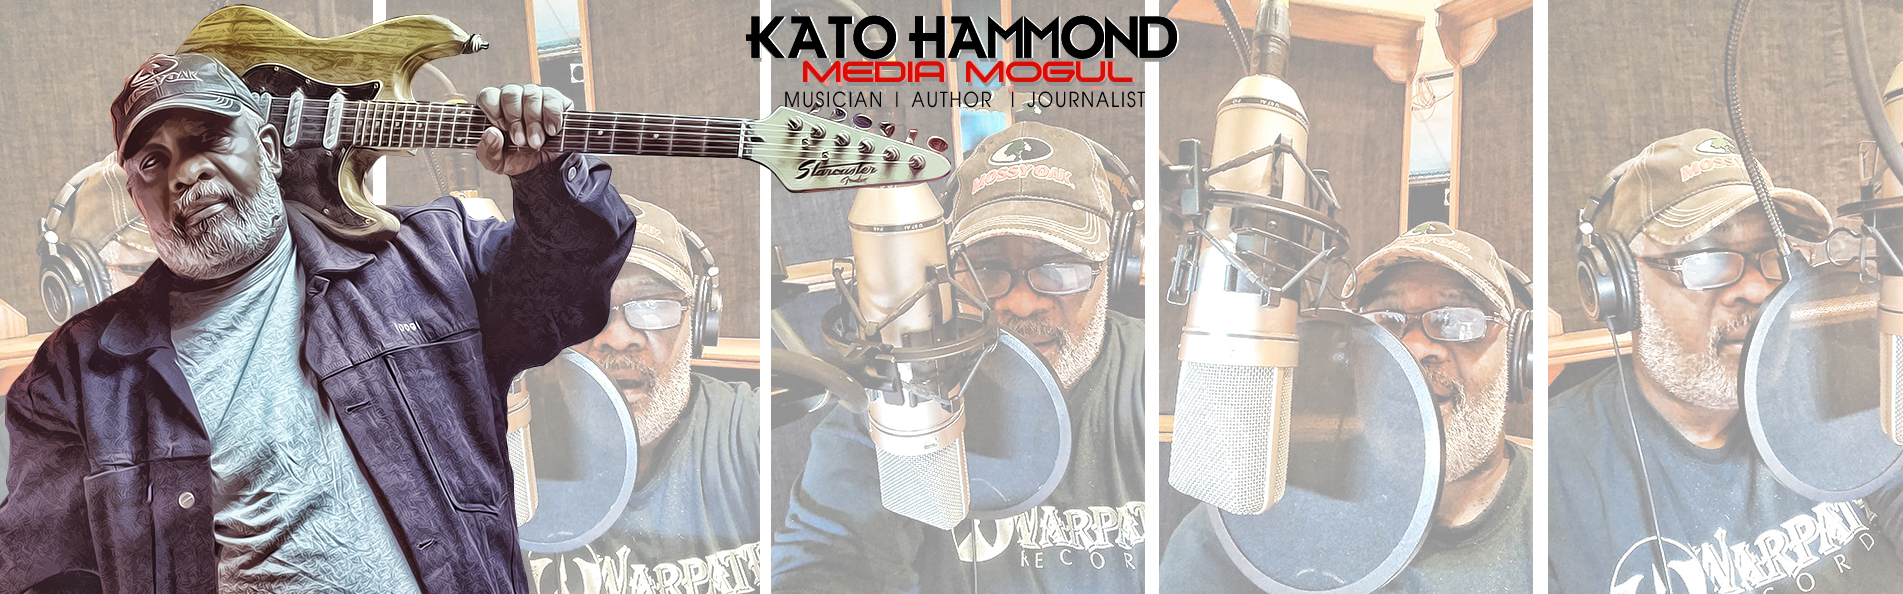 Kato Hammond Music